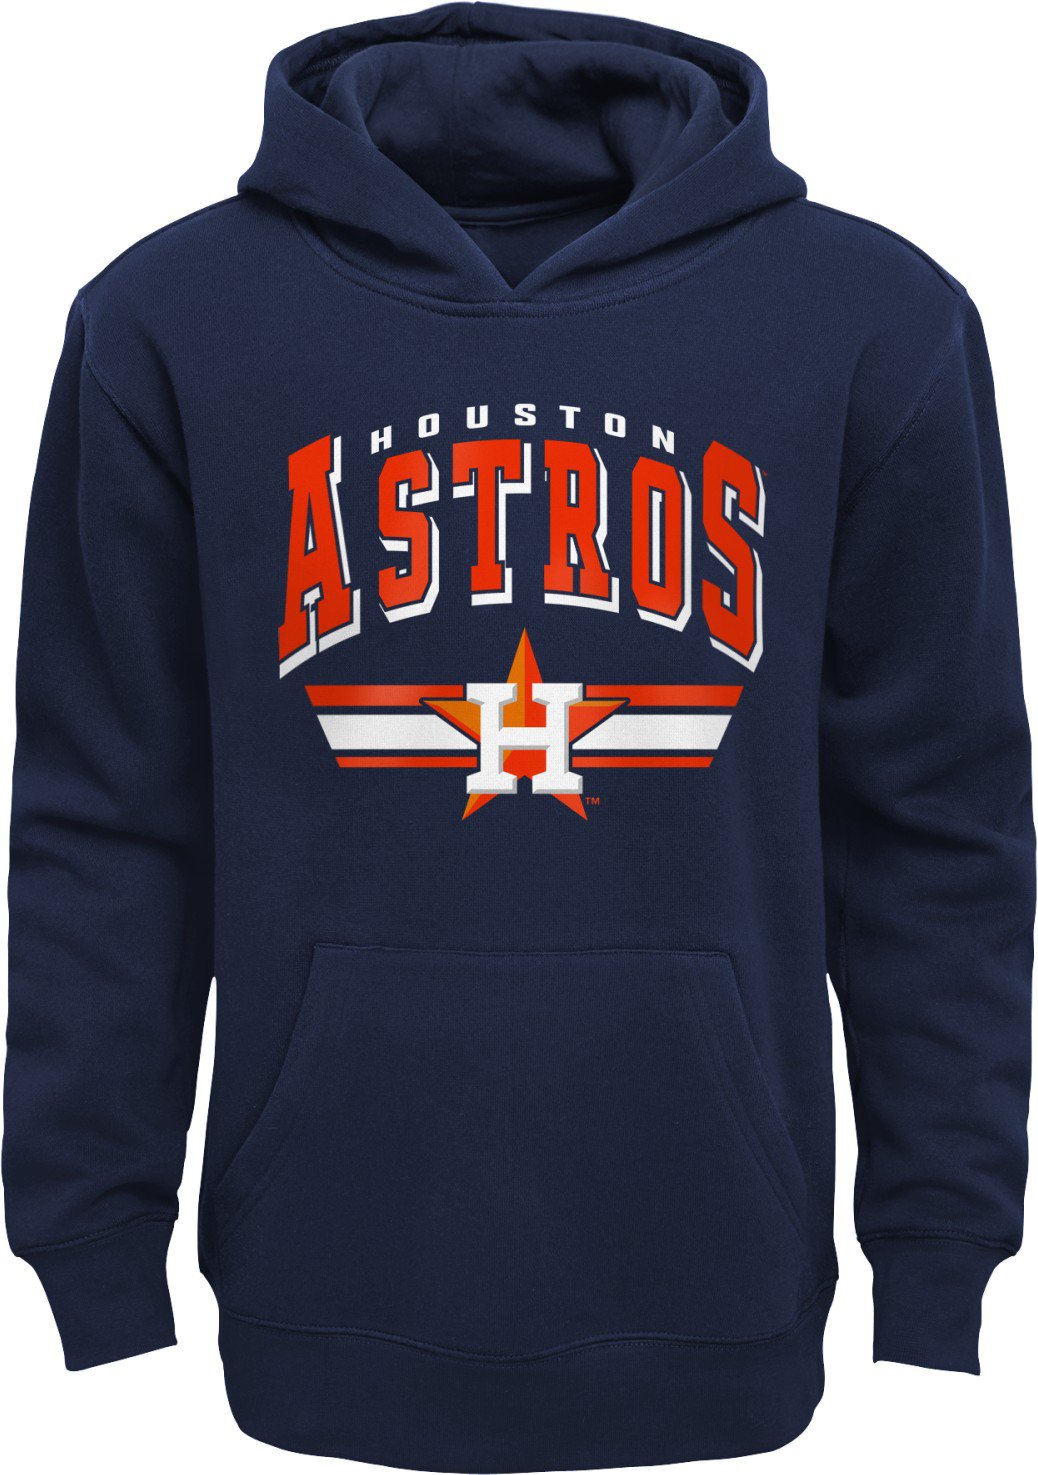 Kids Houston Astros Hoodies, Astros Hoodie, Pullover